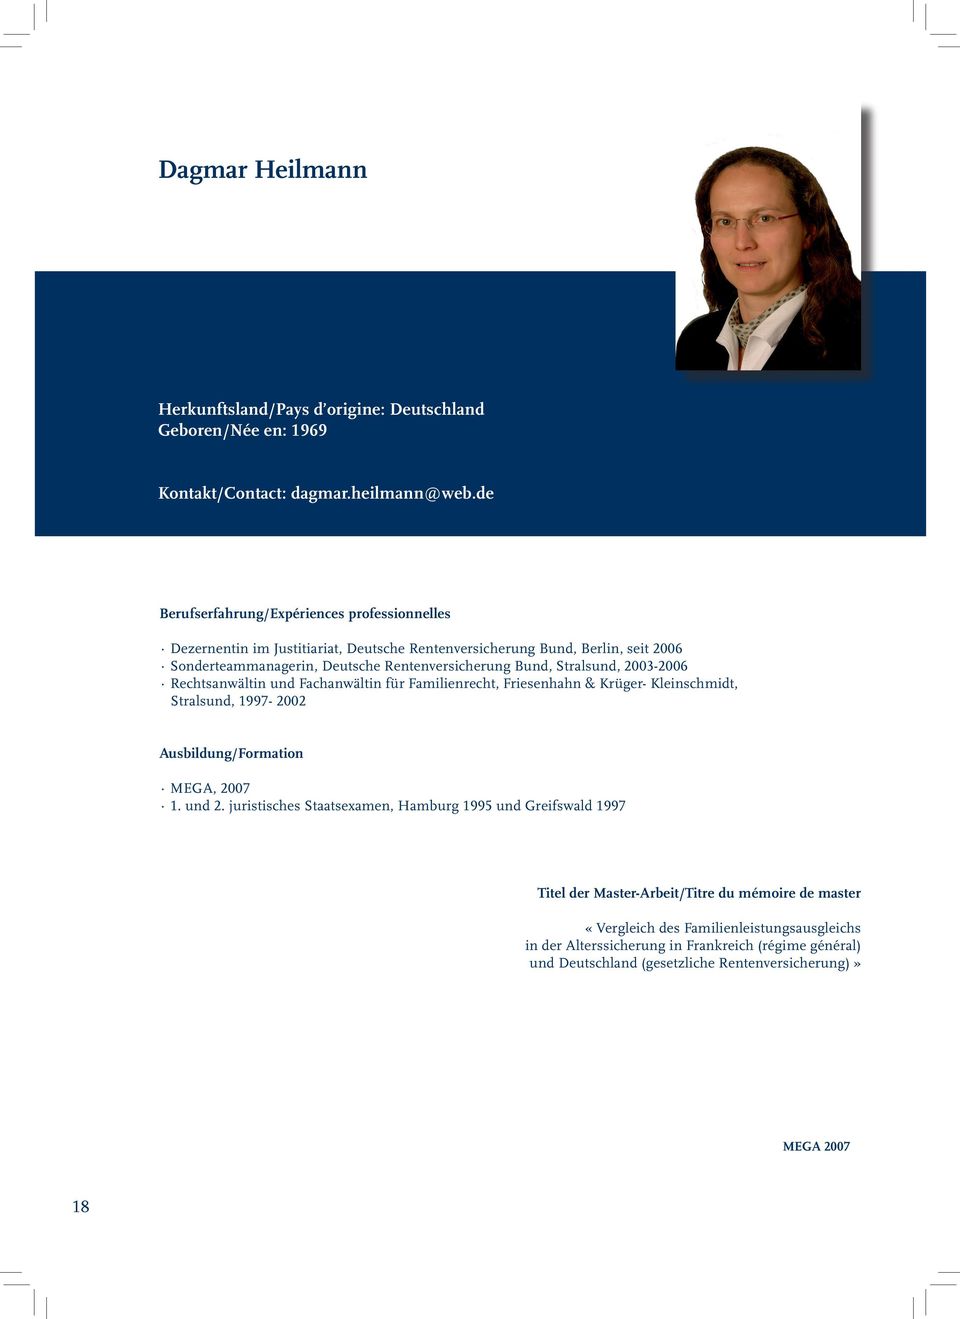 Bund, Stralsund, 2003-2006 Rechtsanwältin und Fachanwältin für Familienrecht, Friesenhahn & Krüger- Kleinschmidt, Stralsund, 1997-2002 Ausbildung/Formation 1. und 2.